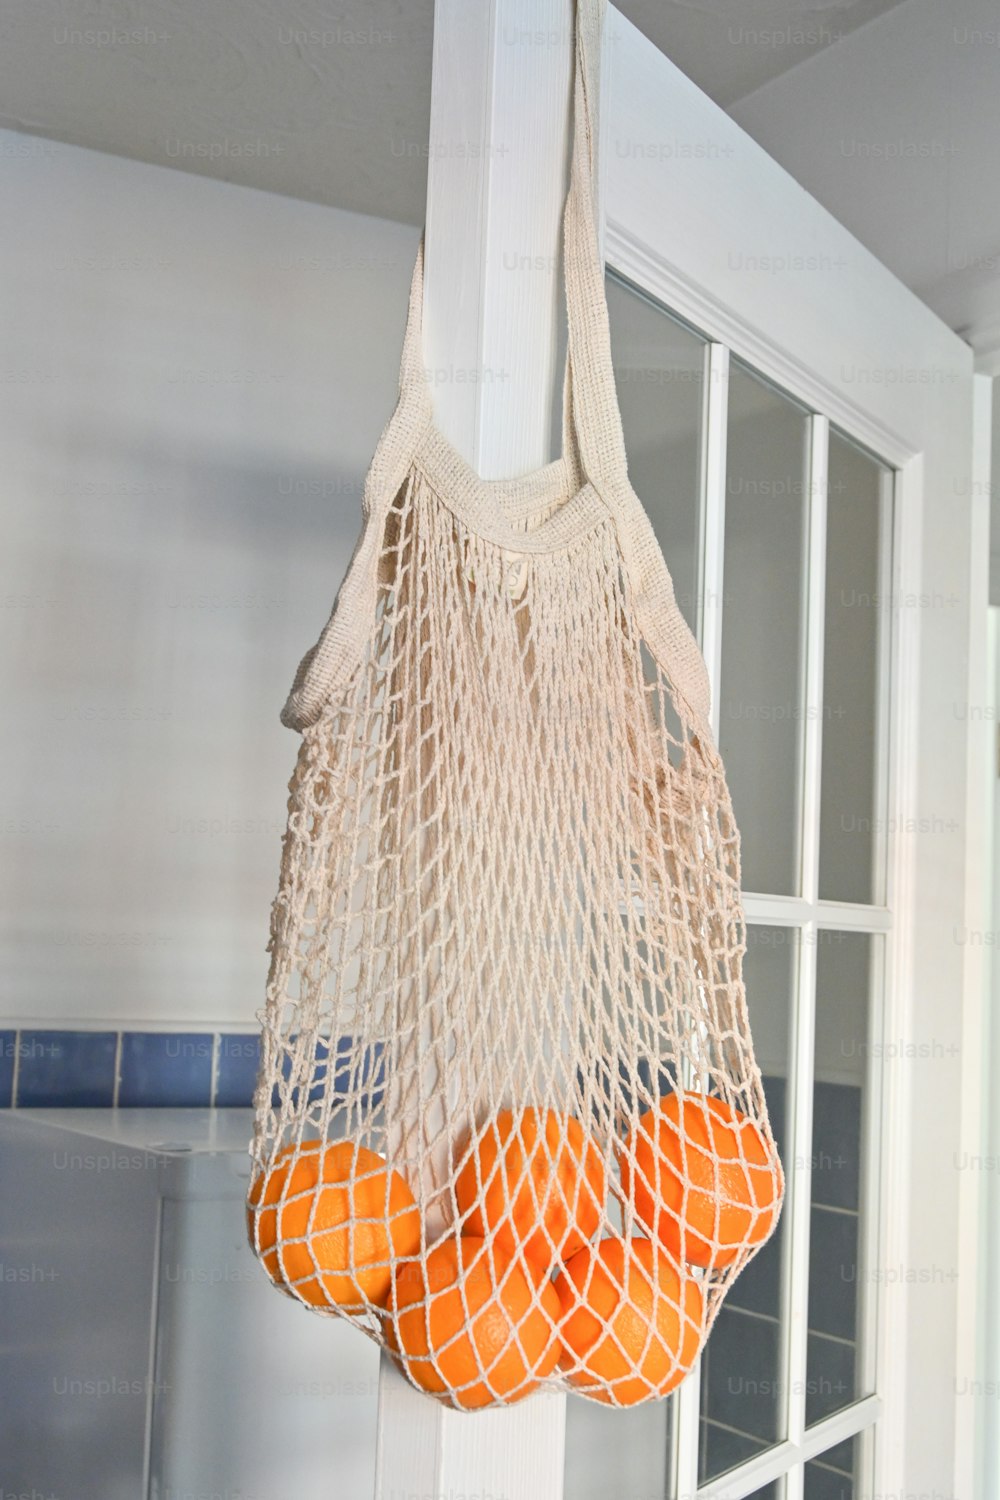 un sac d’oranges suspendu à un crochet